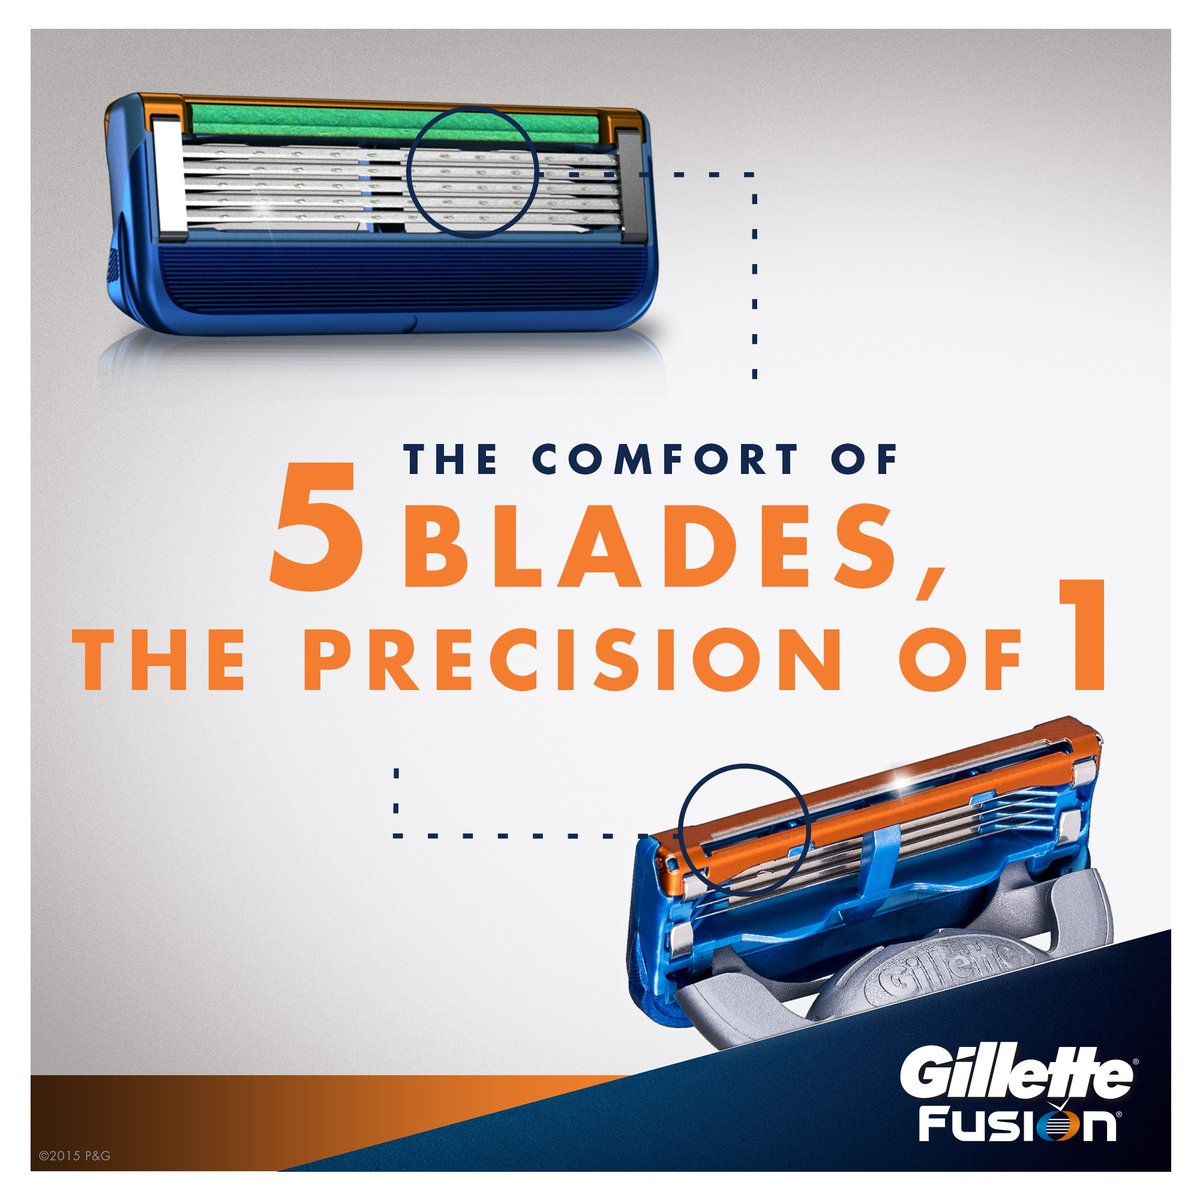 Gillette Fusion 5 Razor Blade Refills 6 pcs